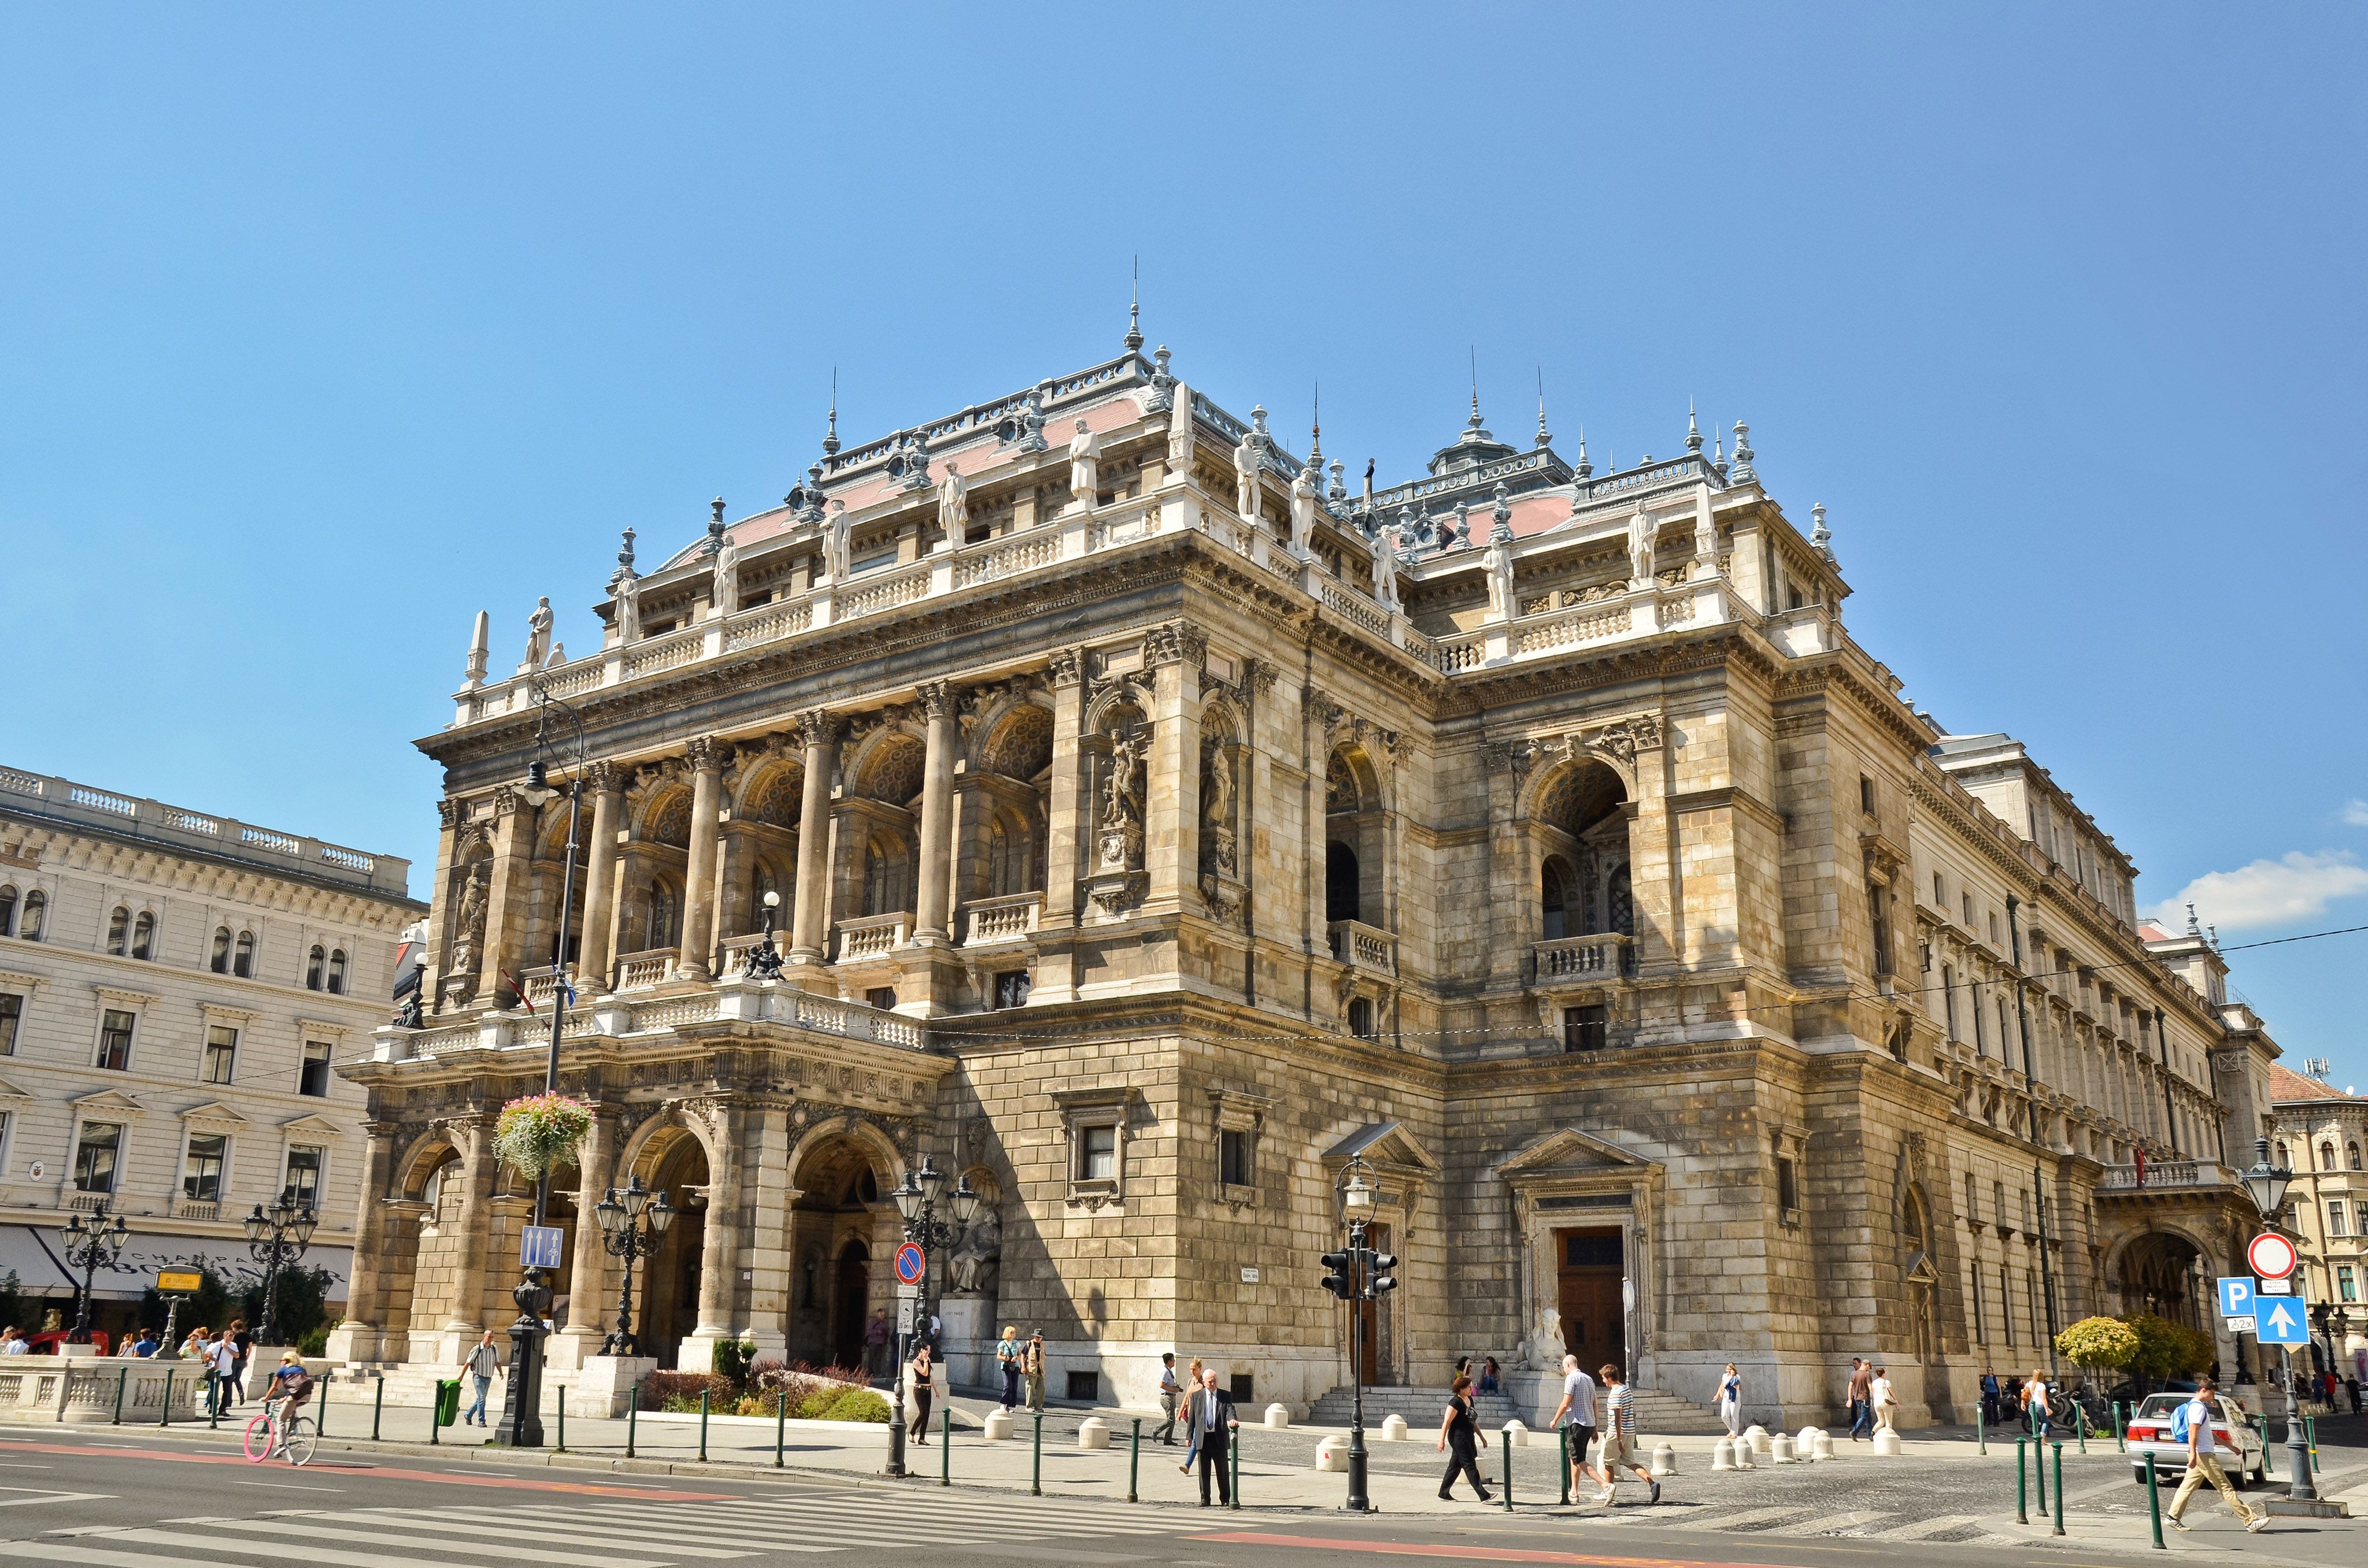 Budapest, Andrassy Avenue, Opera House